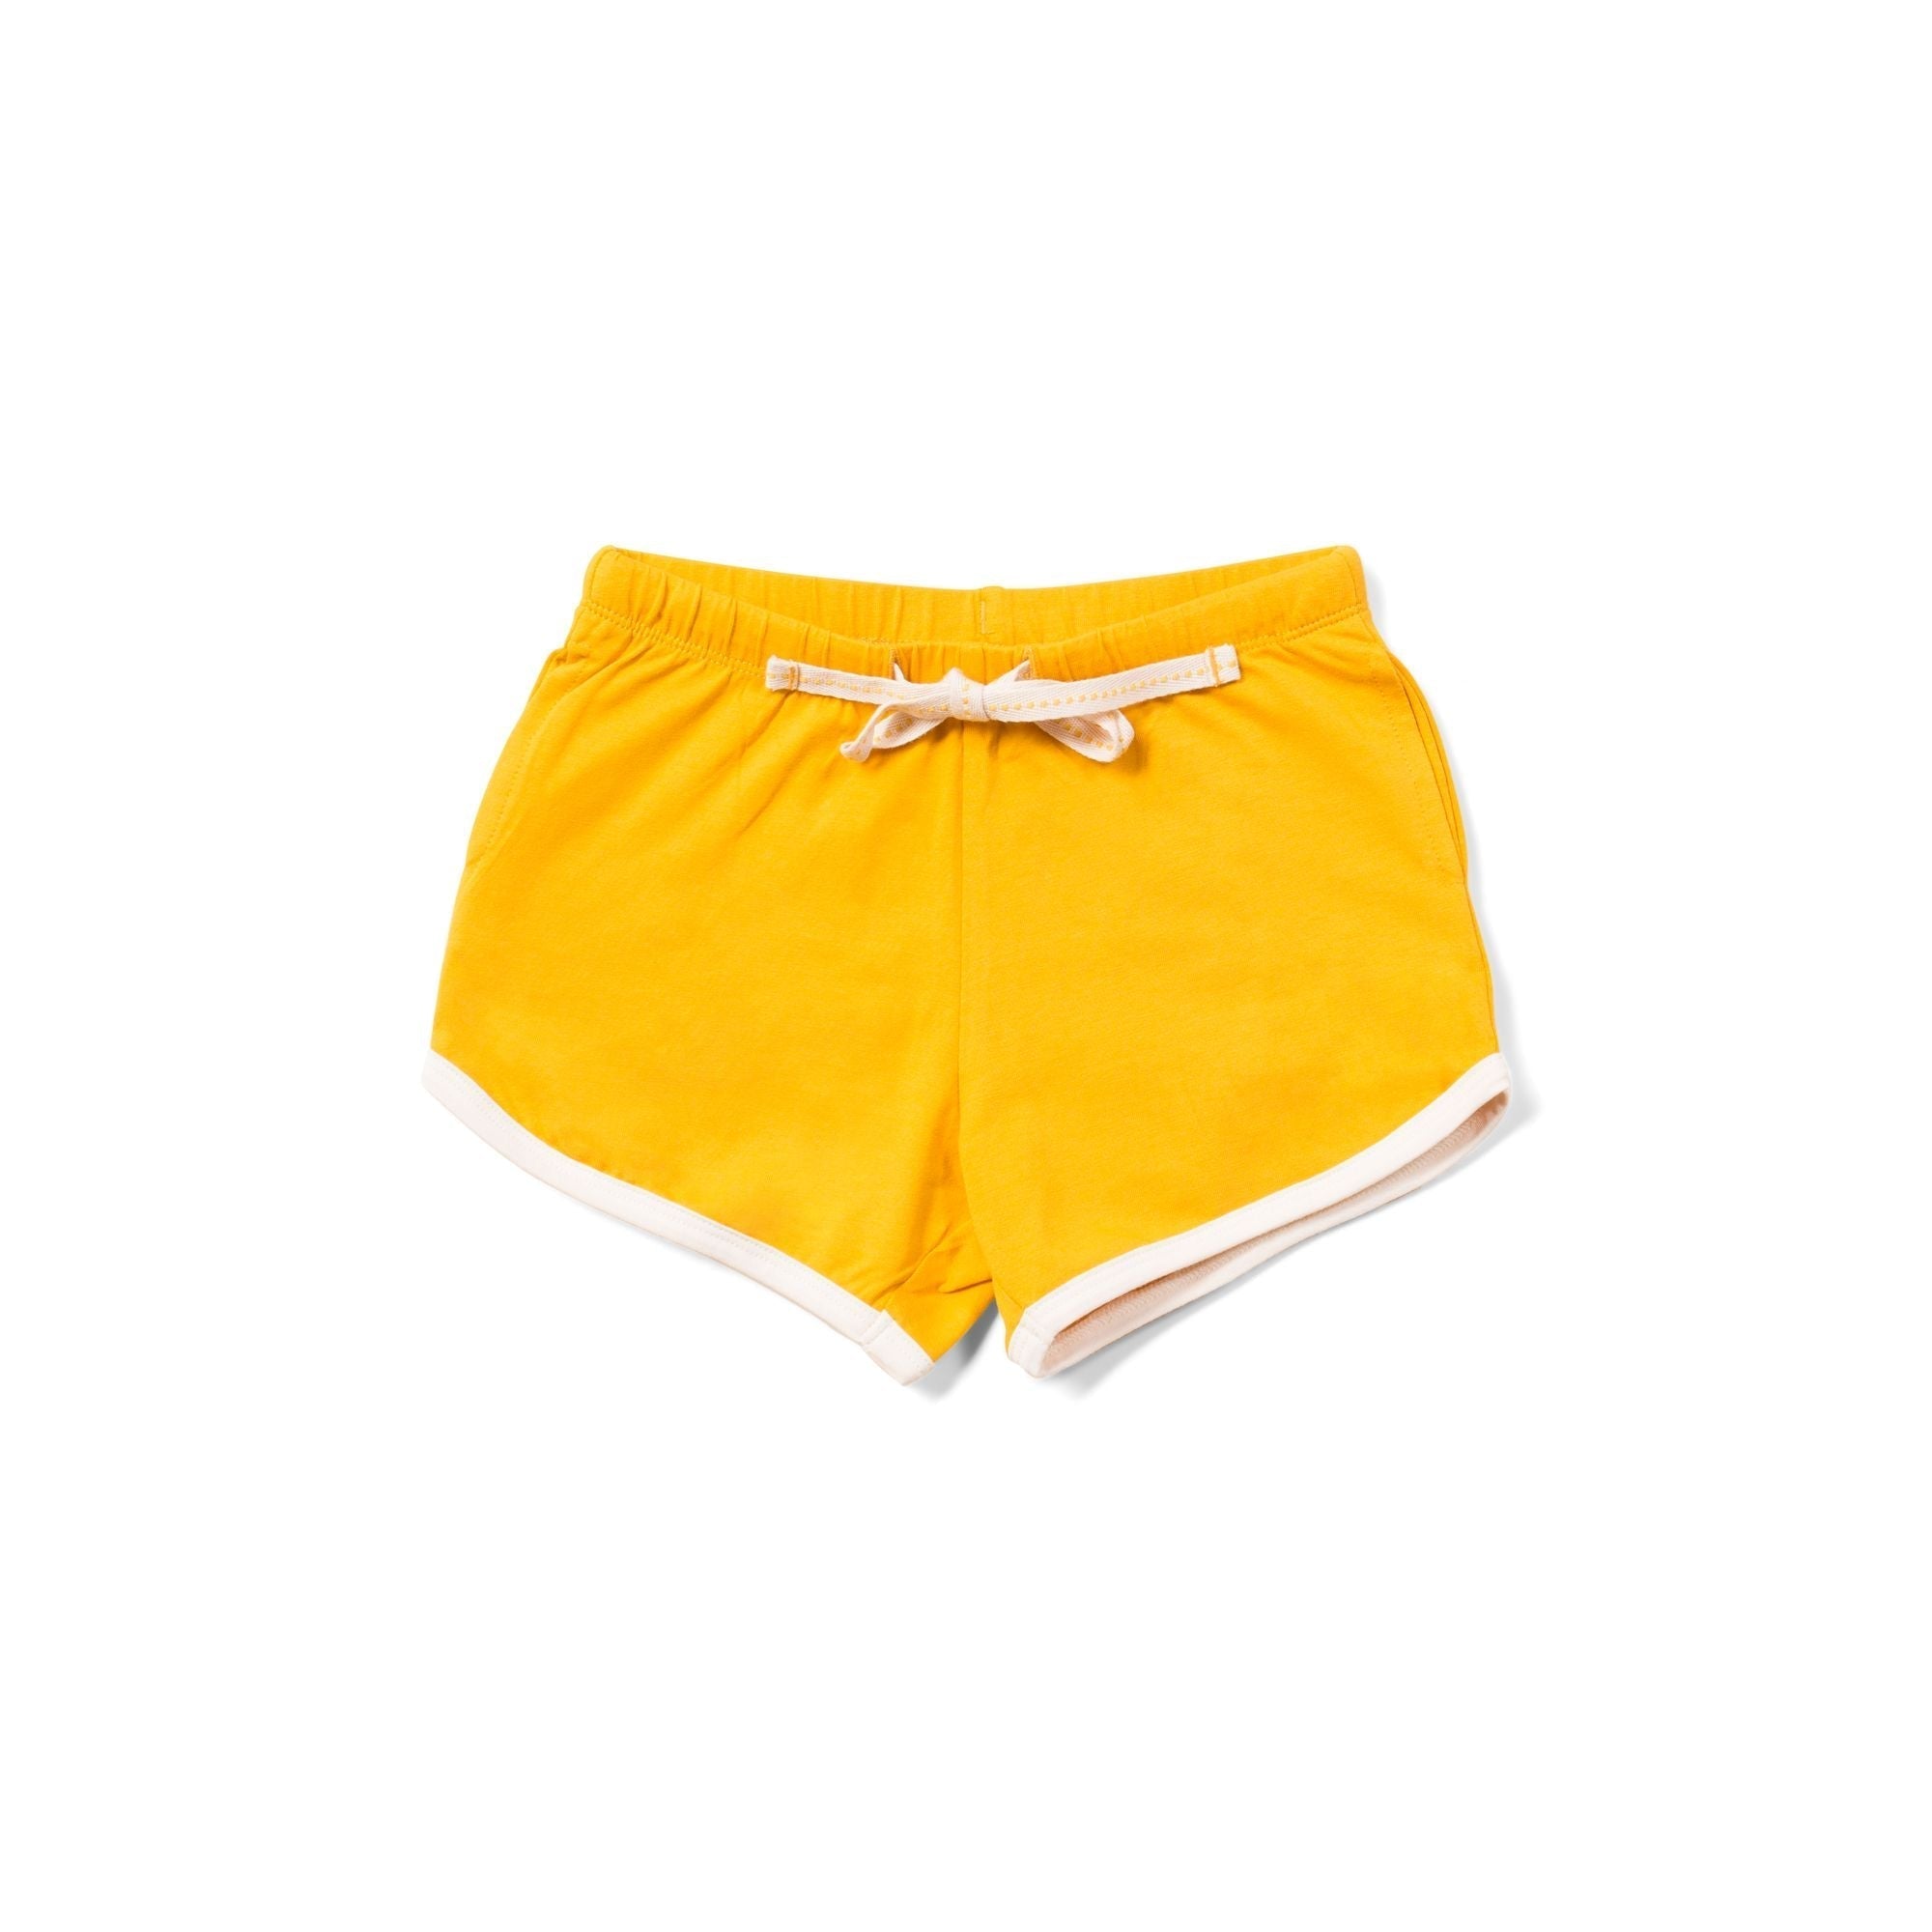 Gold Run Around Shorts - 1 Left Size 4-5 years-Little Green Radicals-Modern Rascals